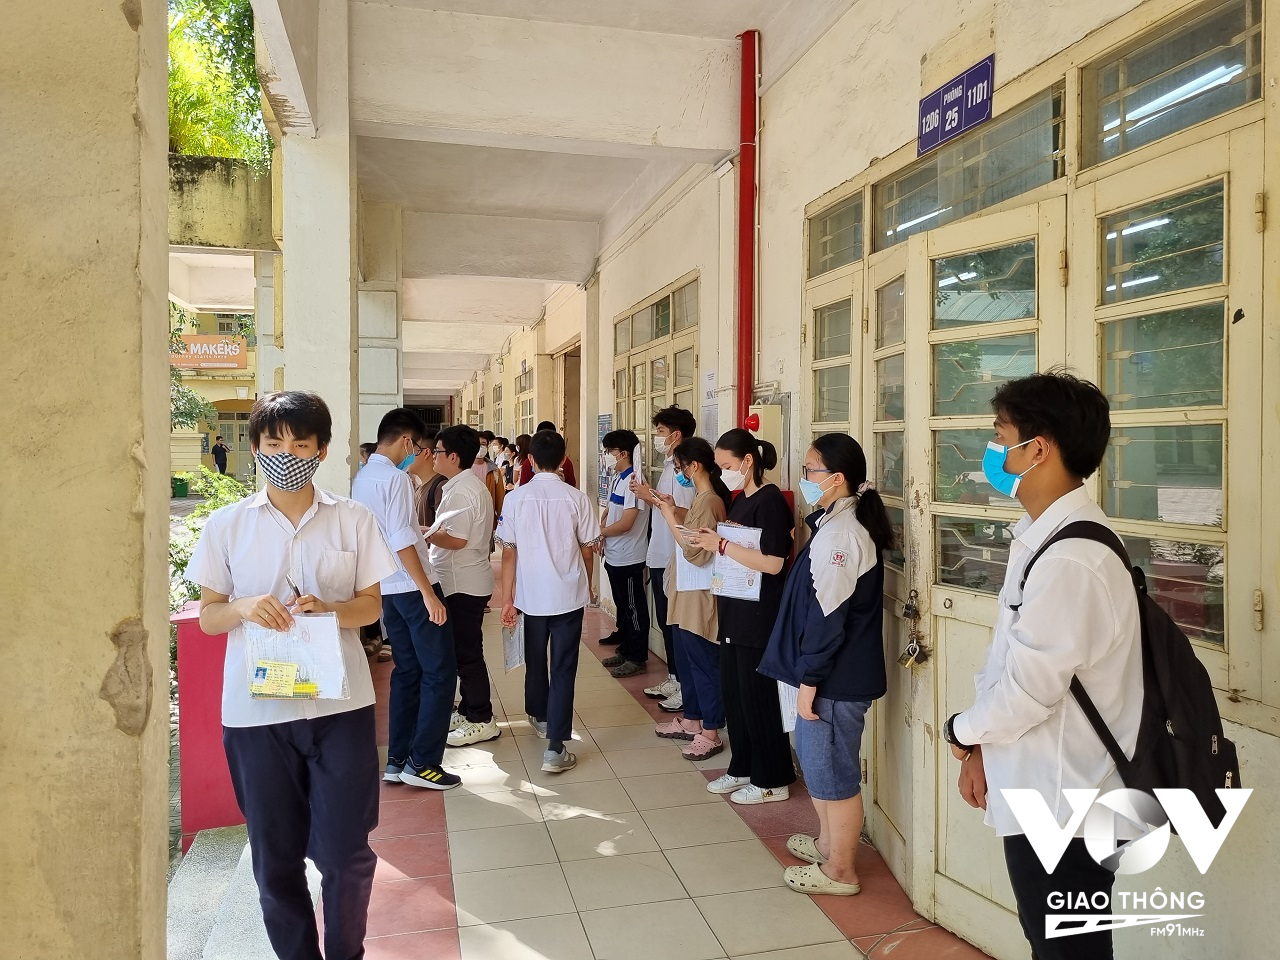 Trường THPT Việt Đức có chỉ tiêu tuyển sinh là 765, nhưng có tới 1.570 học sinh đăng ký nguyện vọng 1, tỷ lệ ''chọi'' là 2,05